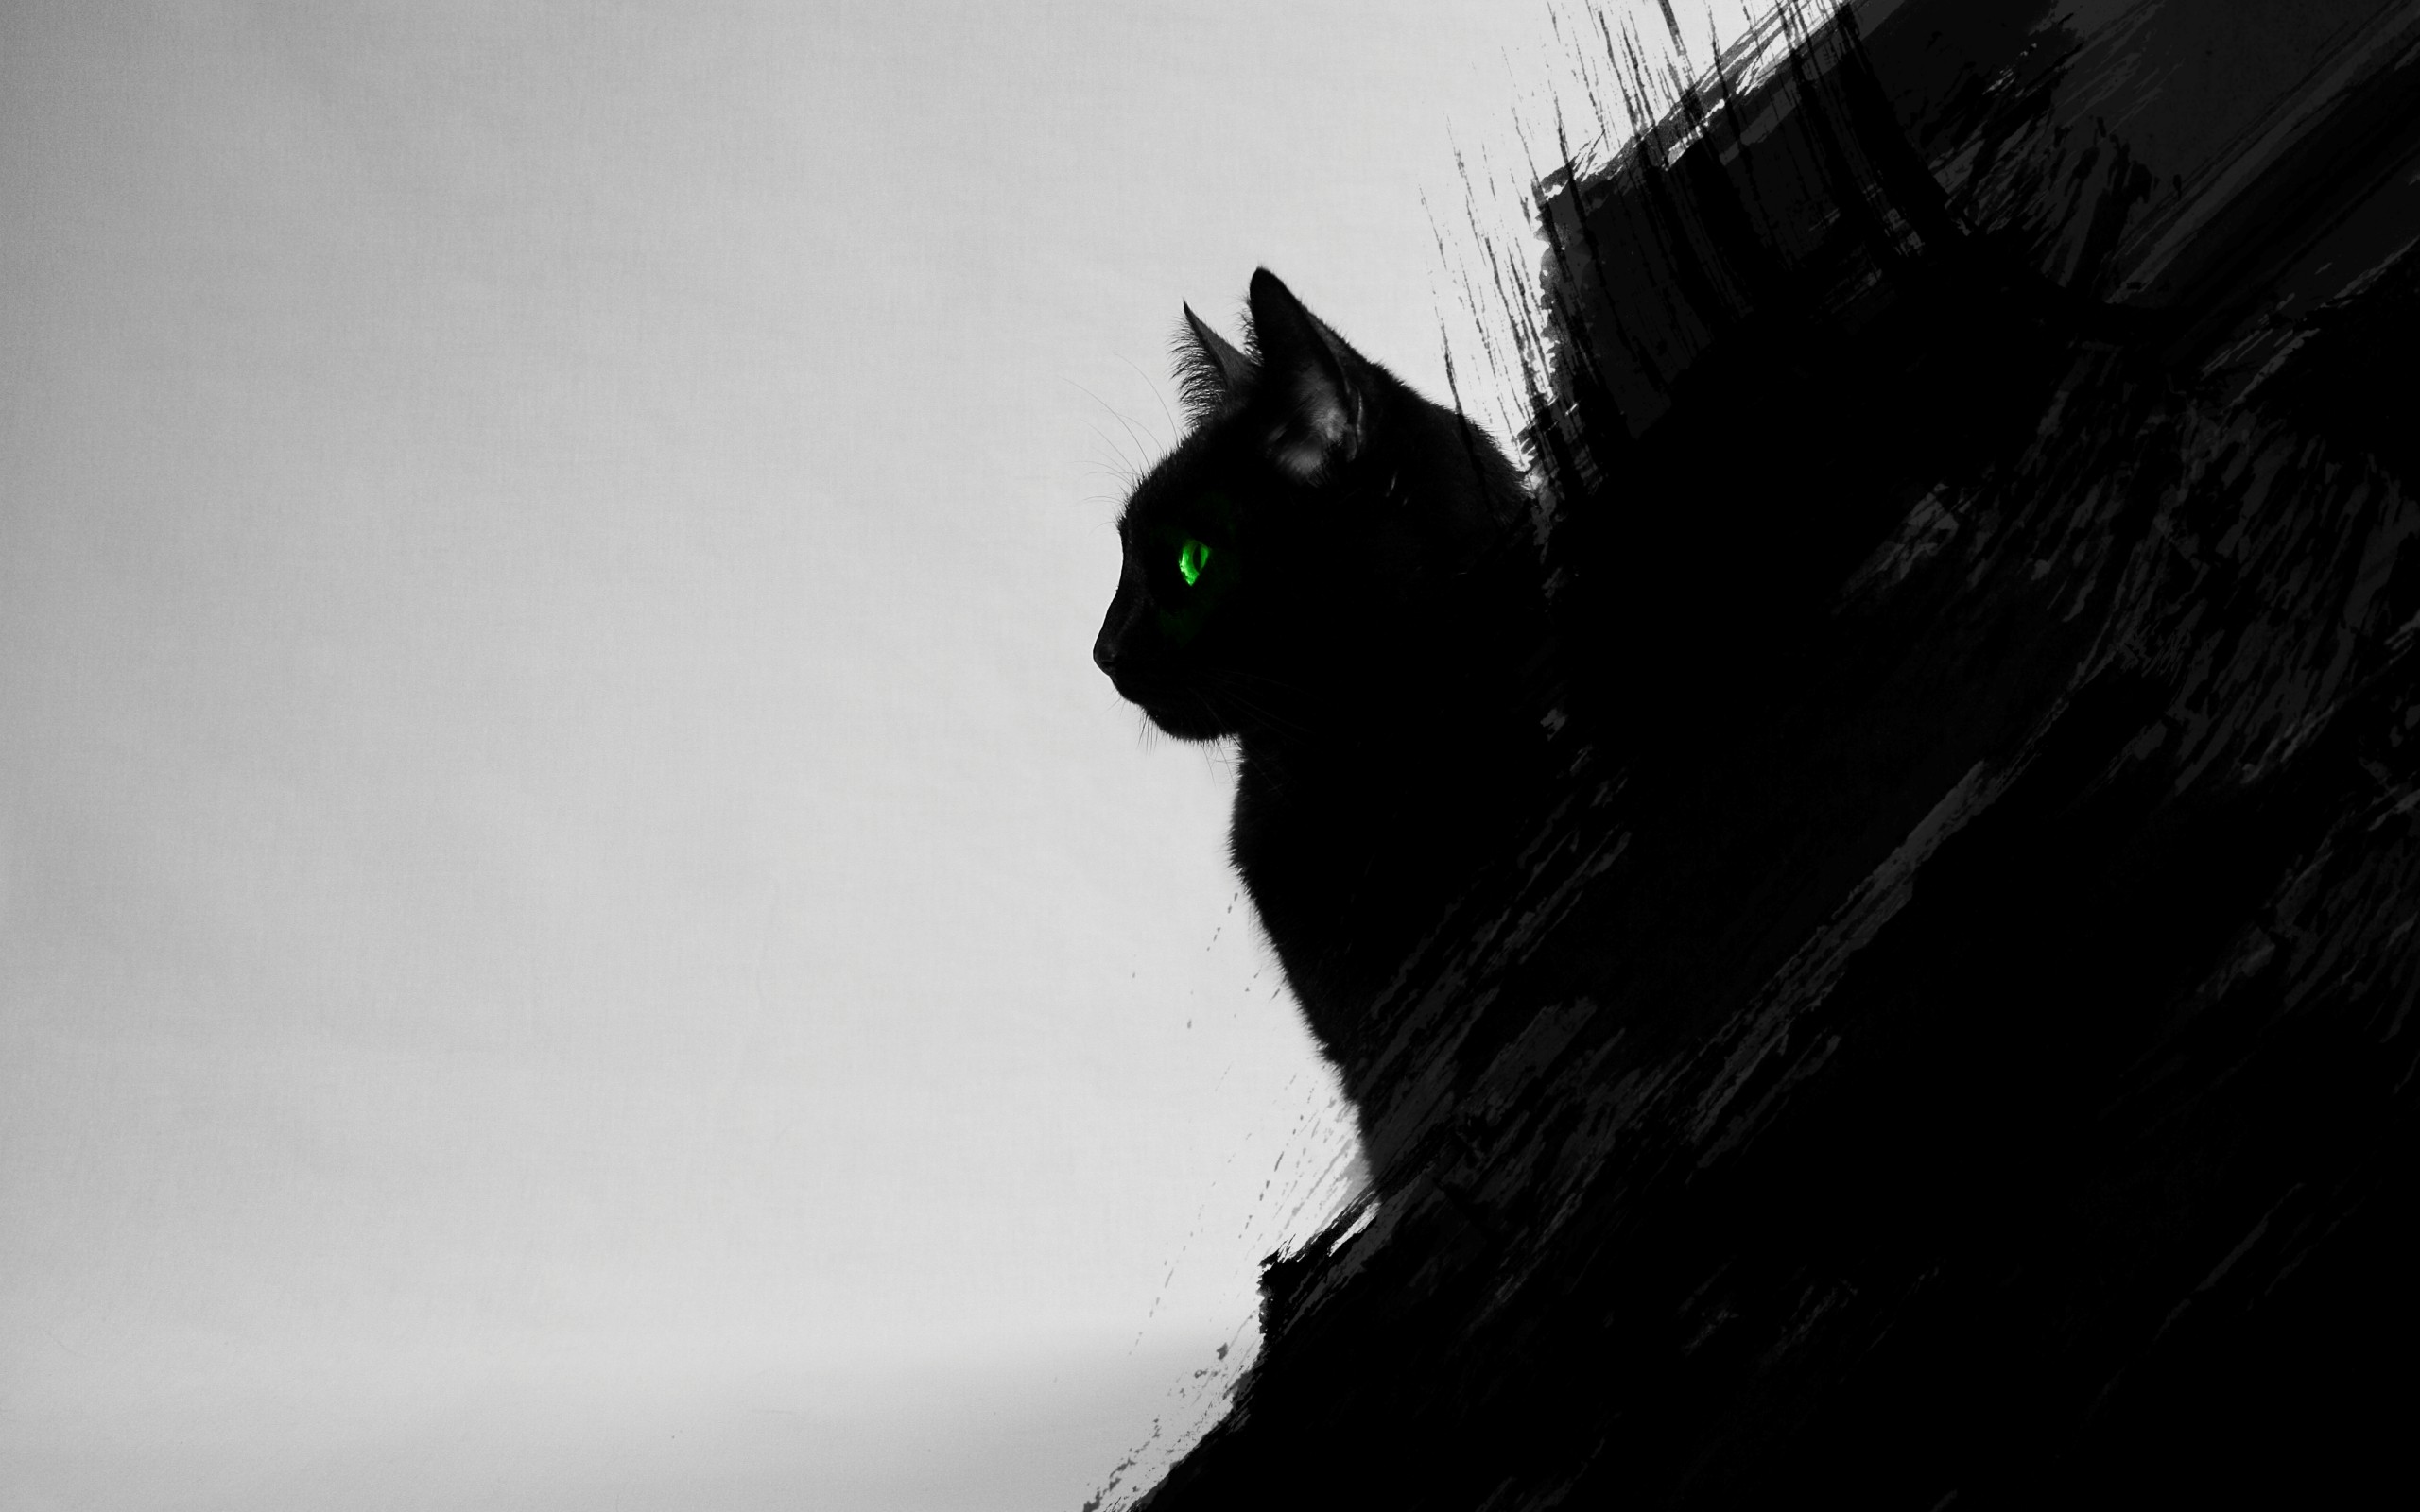 모바일 고양이 벽지,고양이,검정,검은 고양이,하얀,구레나룻